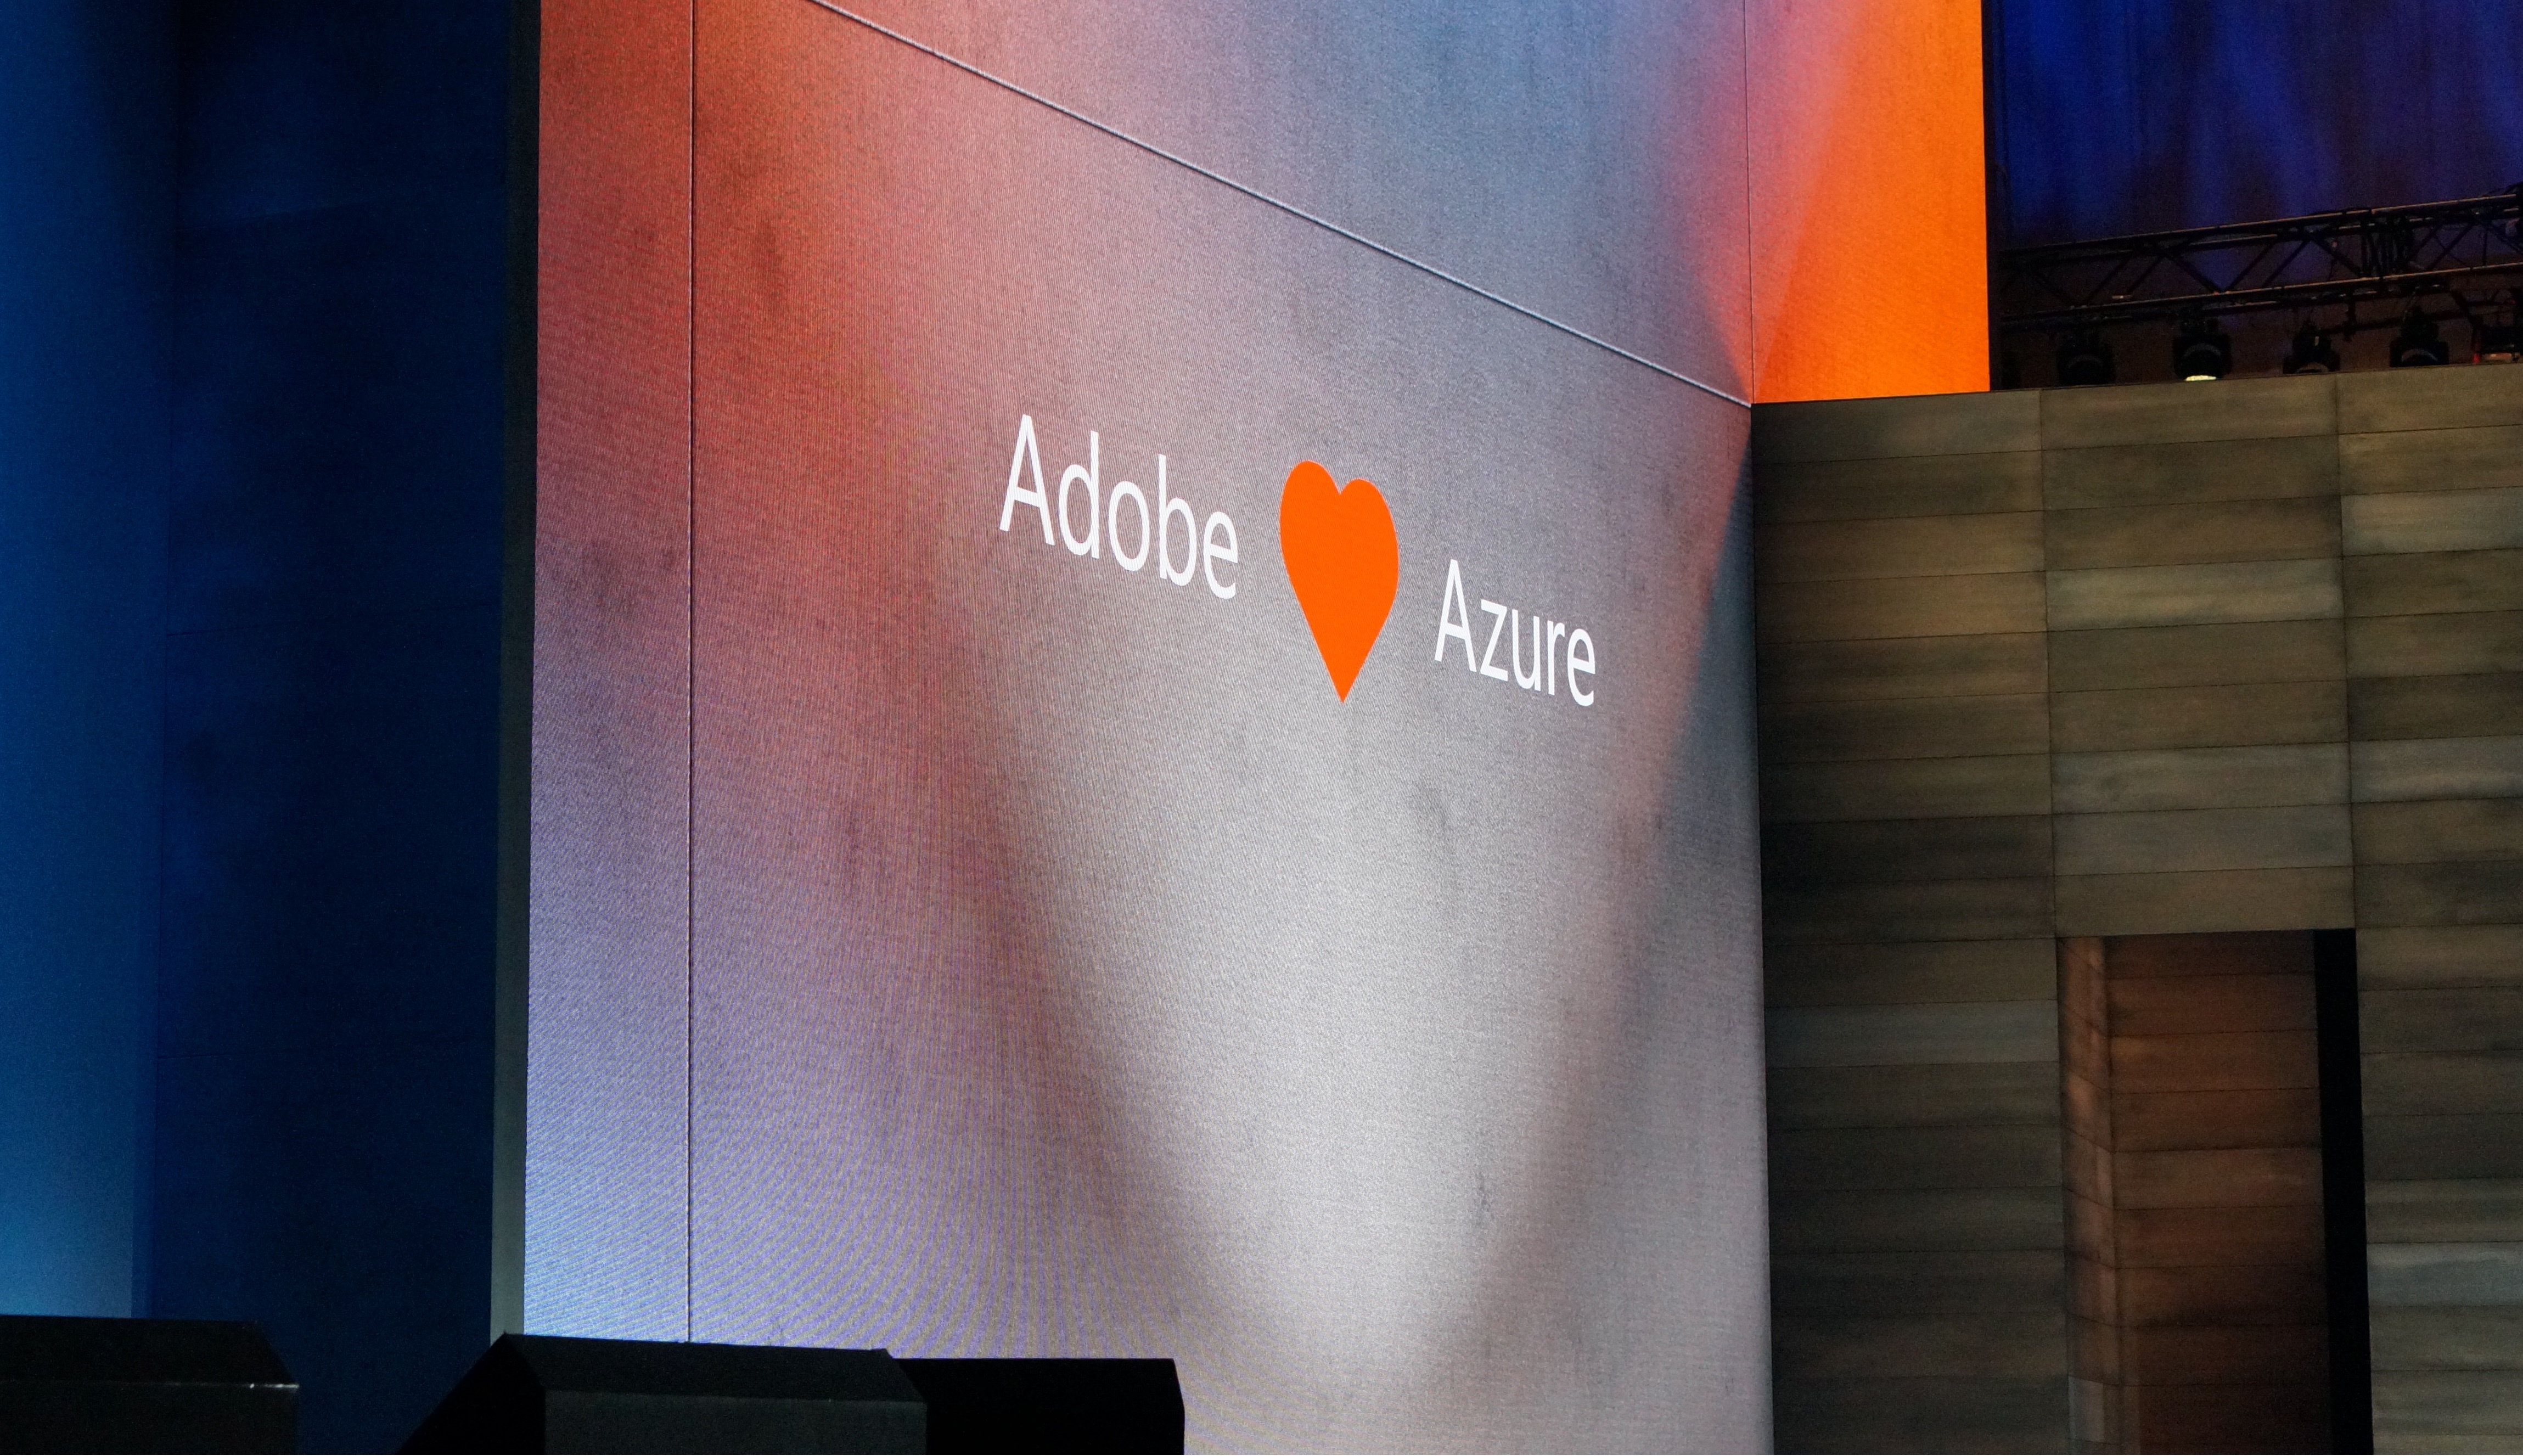 签下 Adobe，微软的 Azure 云服务又多了一个实力大客户